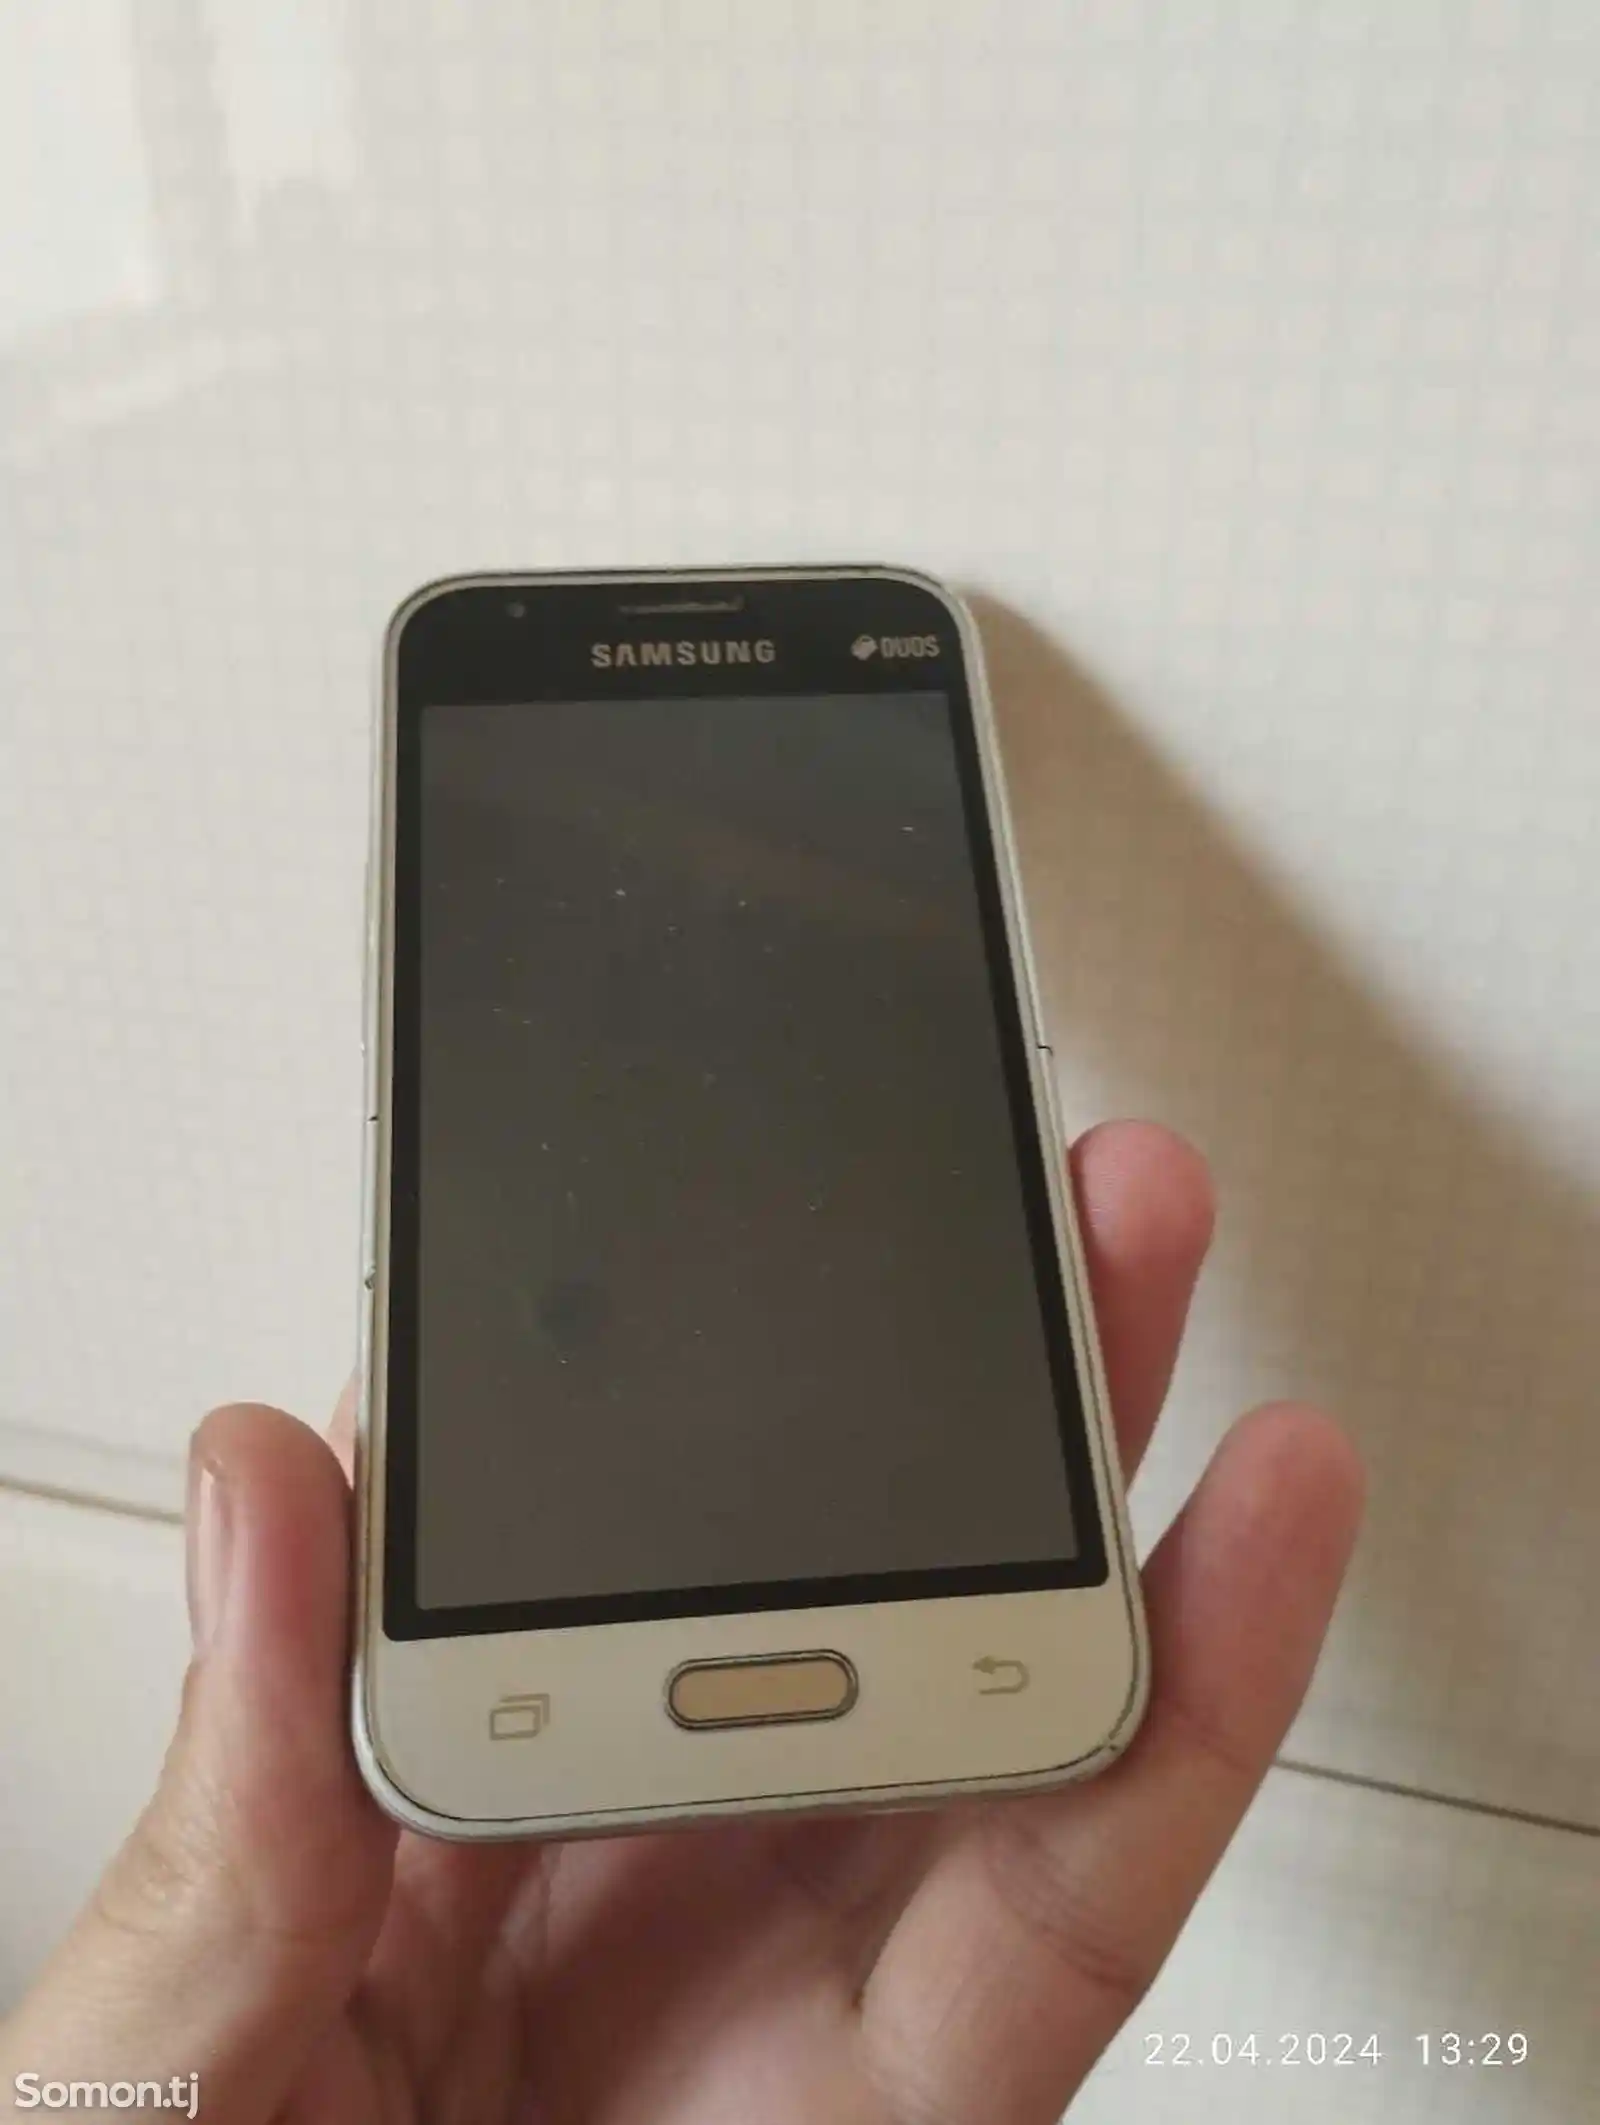 Samsung Galaxy j1 mini-1